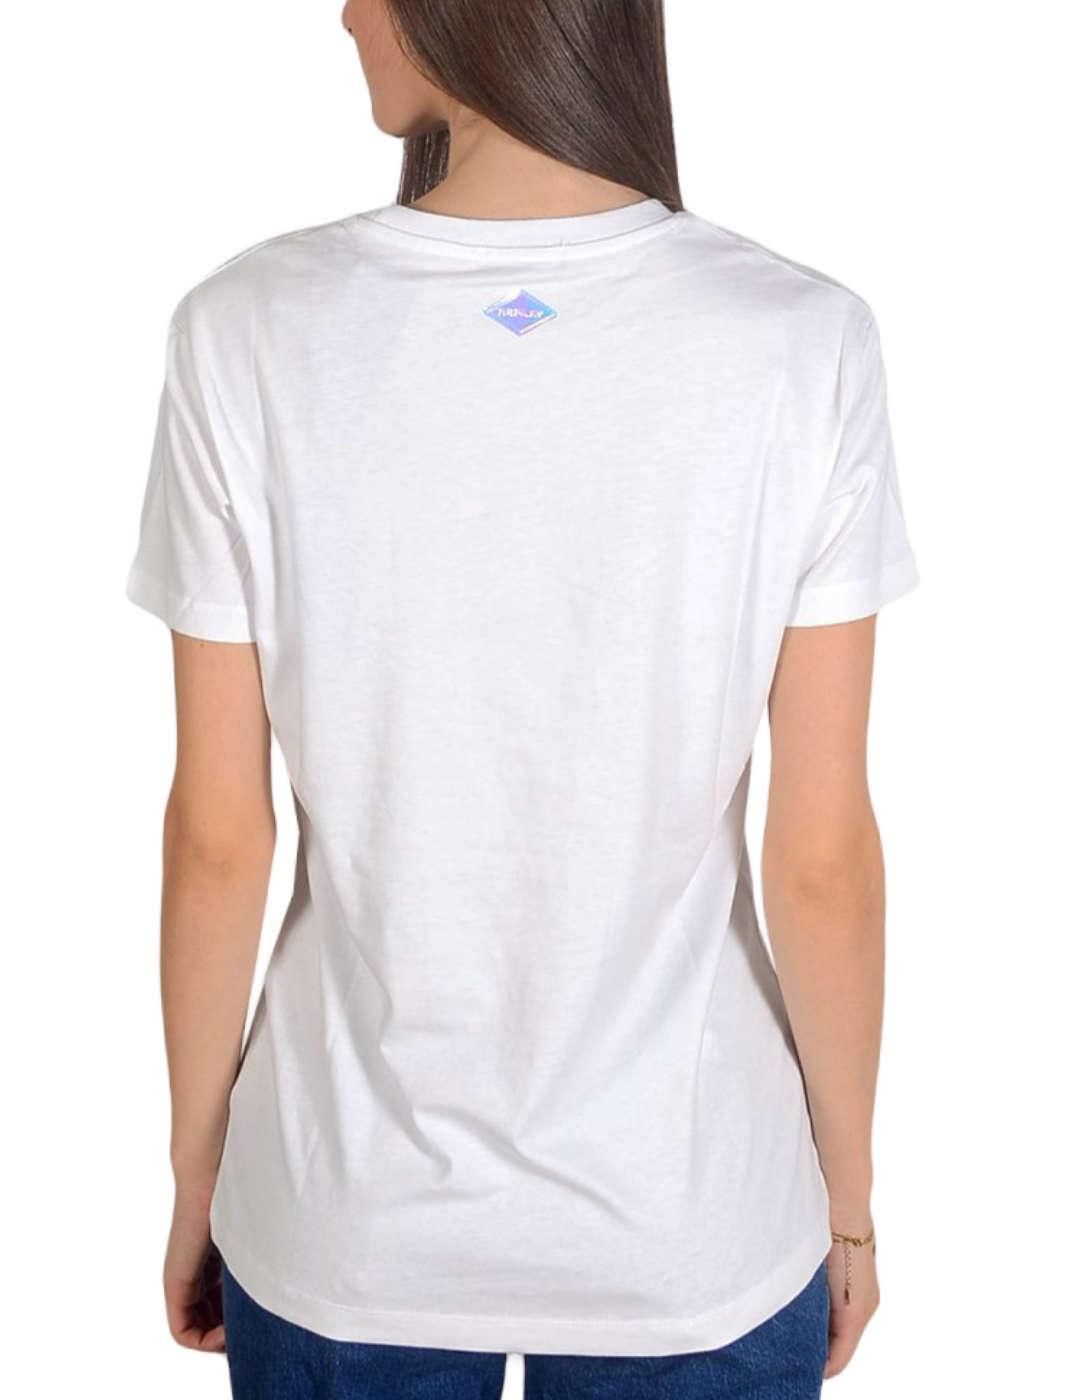 Camiseta Replay blanco para mujer-z